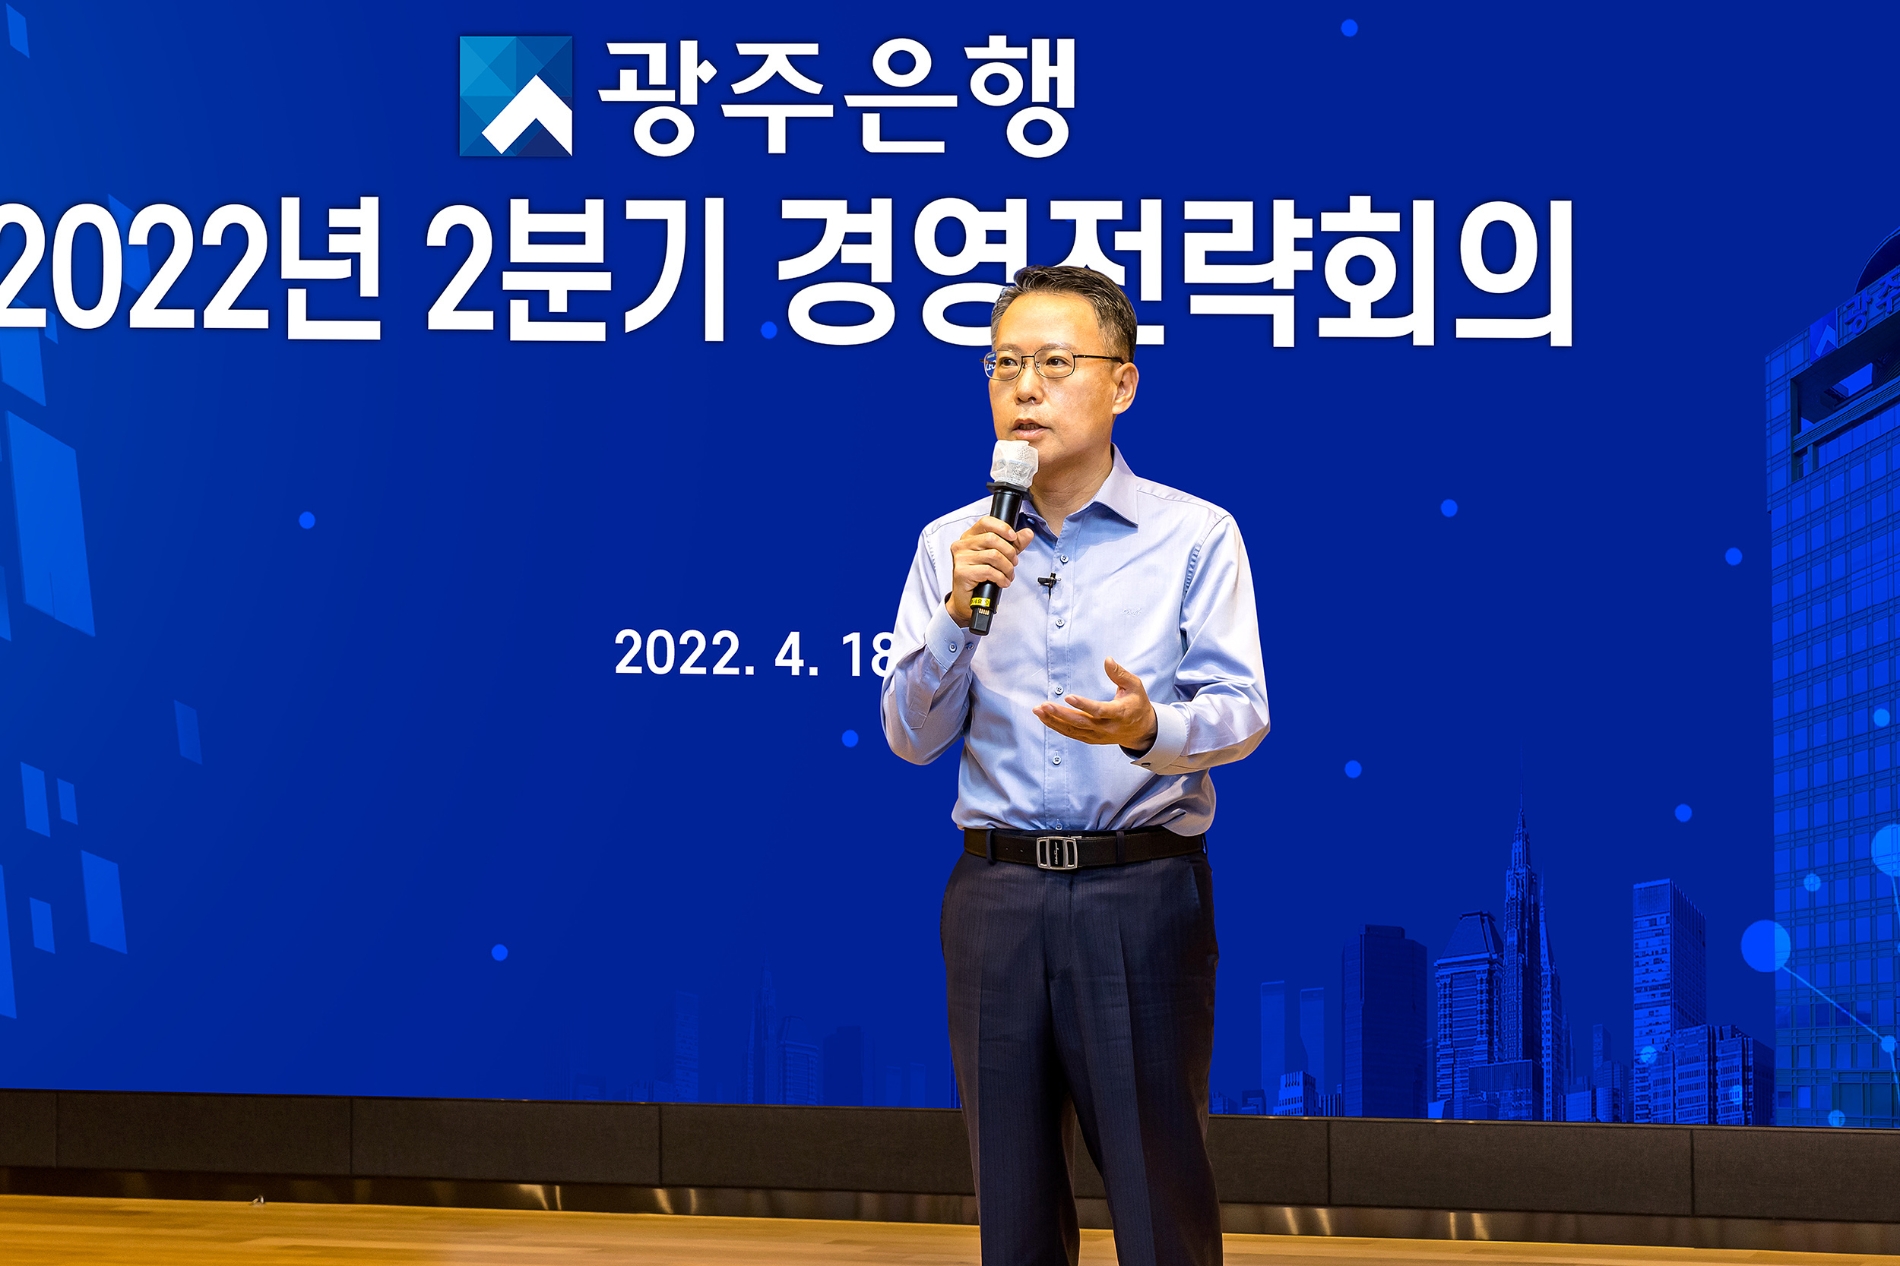 광주은행, 2분기 경영전략회의 개최